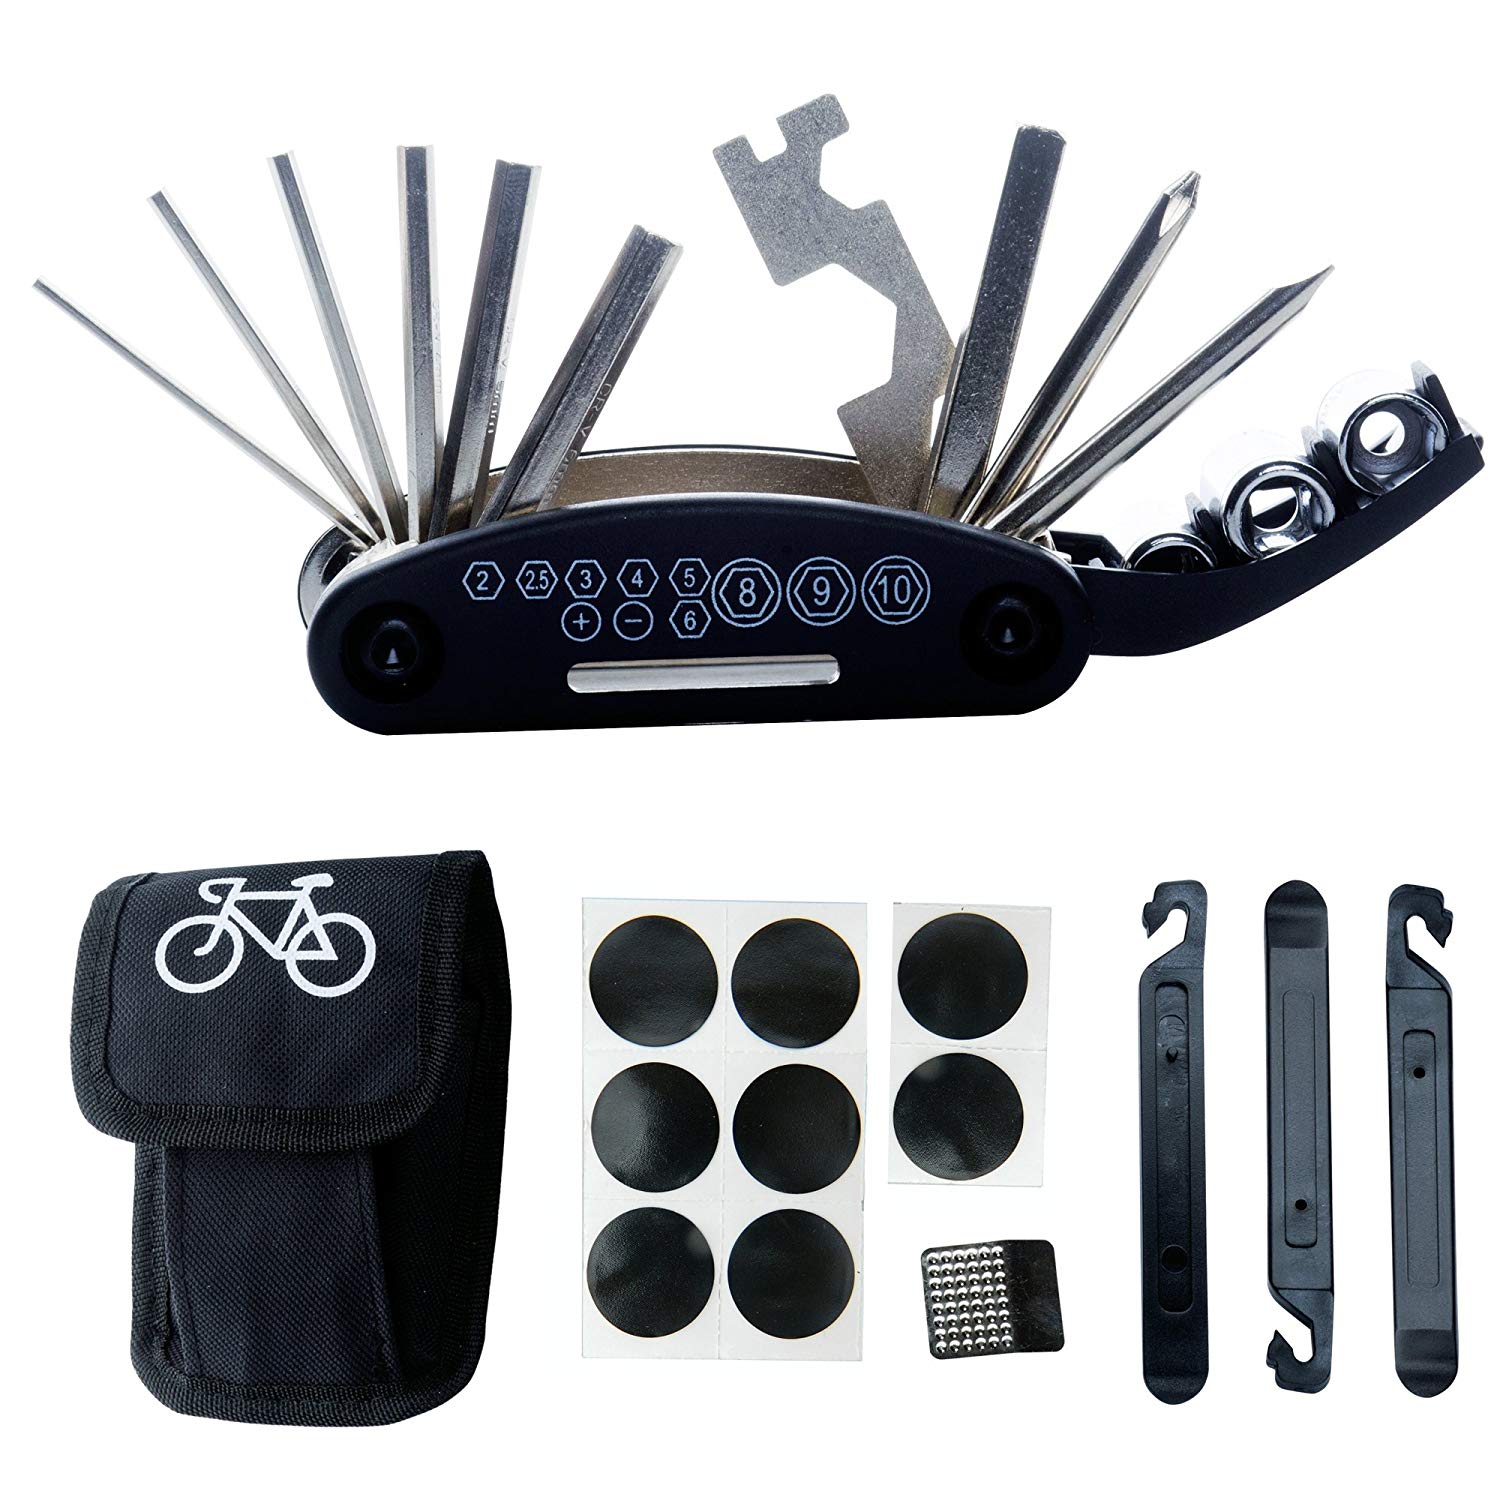 Daway Multi-Function Bicycle Repair Tool Kit